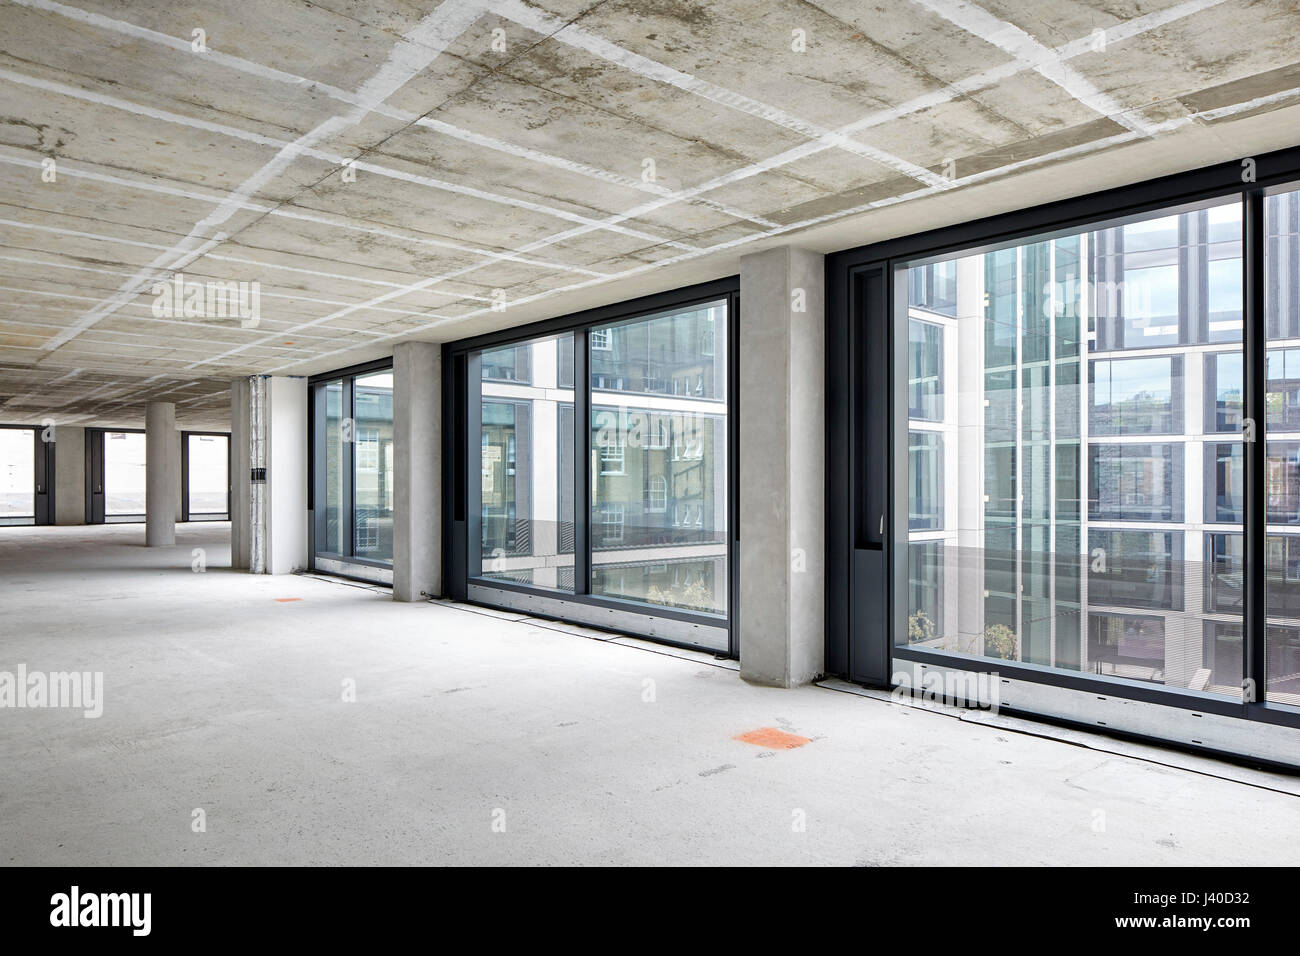 Unmöblierte Floorplate mit Verglasung in Richtung Innenhof. Chancery Lane, London, Vereinigtes Königreich. Architekt: Bennetts Associates Architects, 2015. Stockfoto